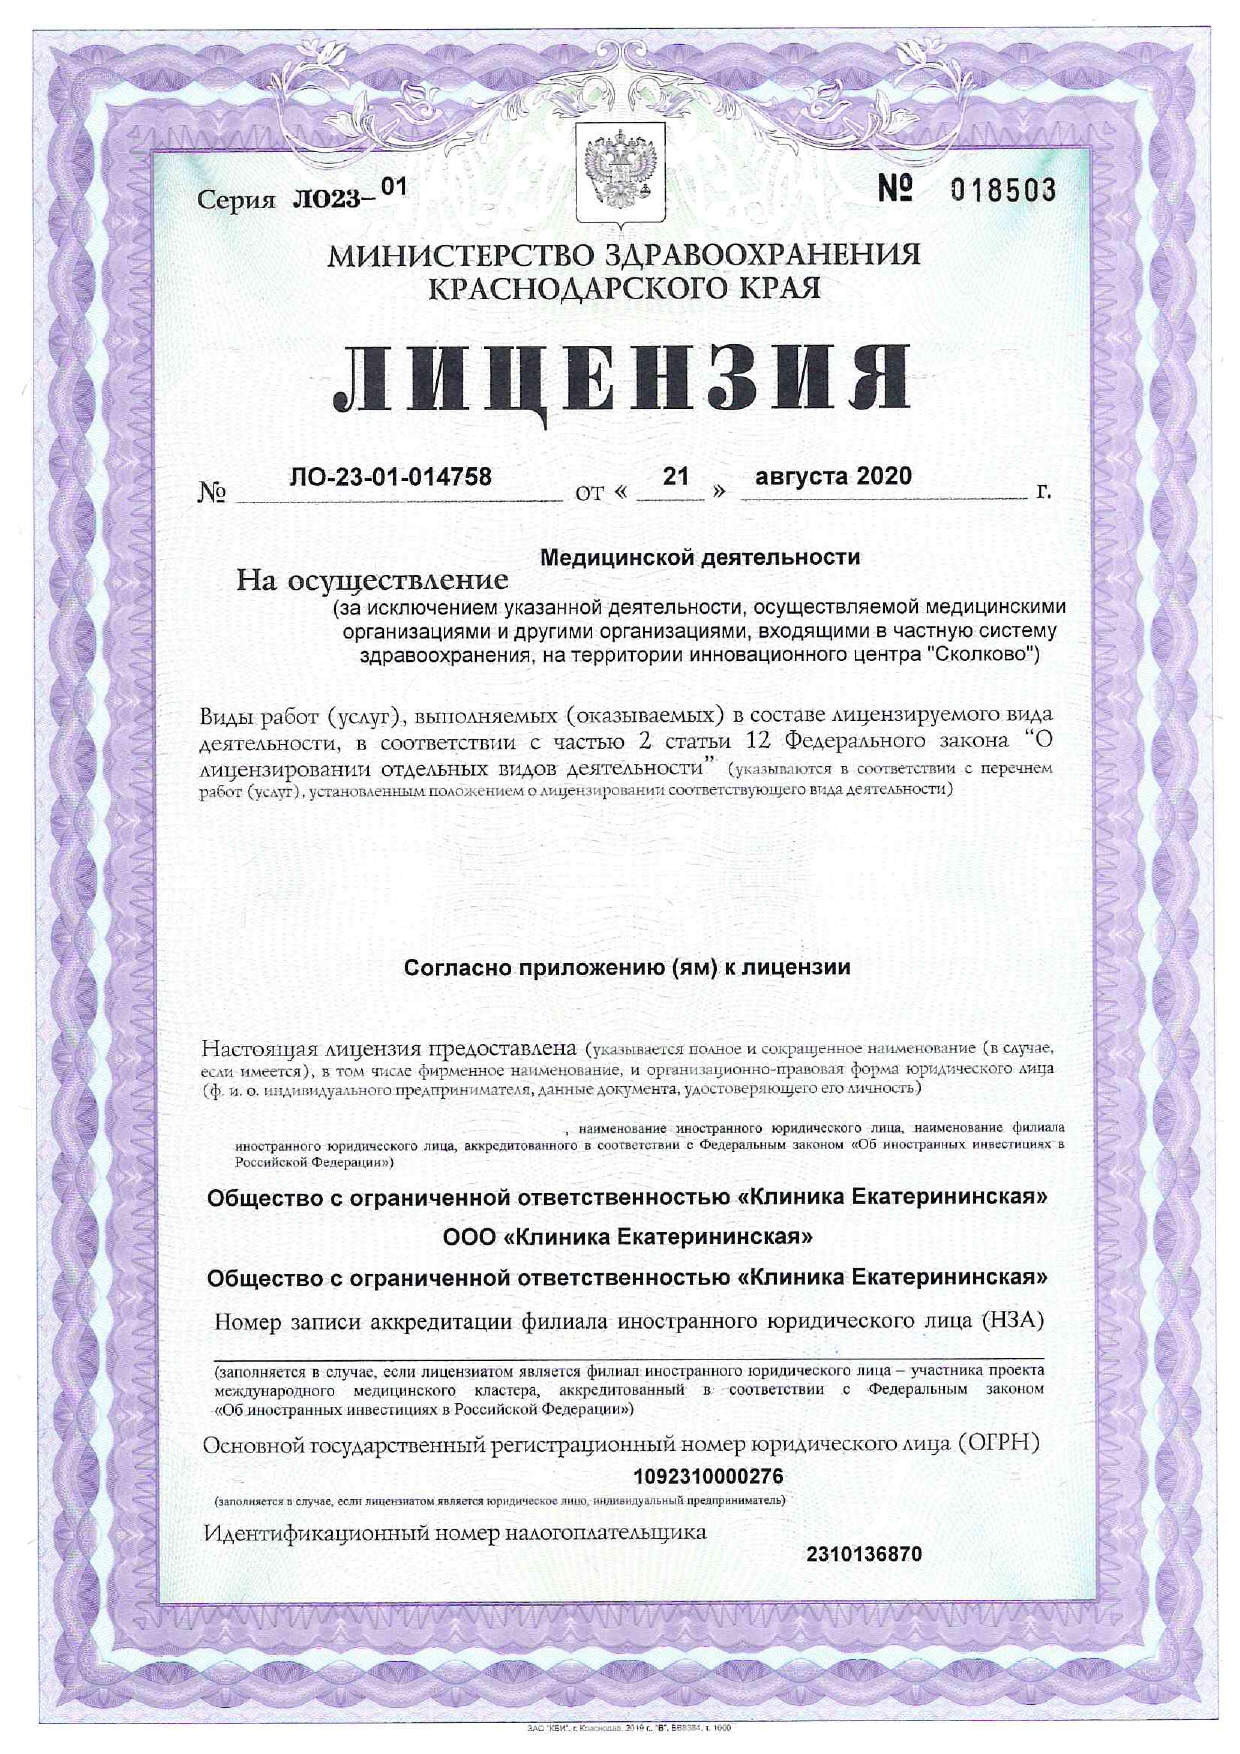 Лицензия клиники Екатерининская 